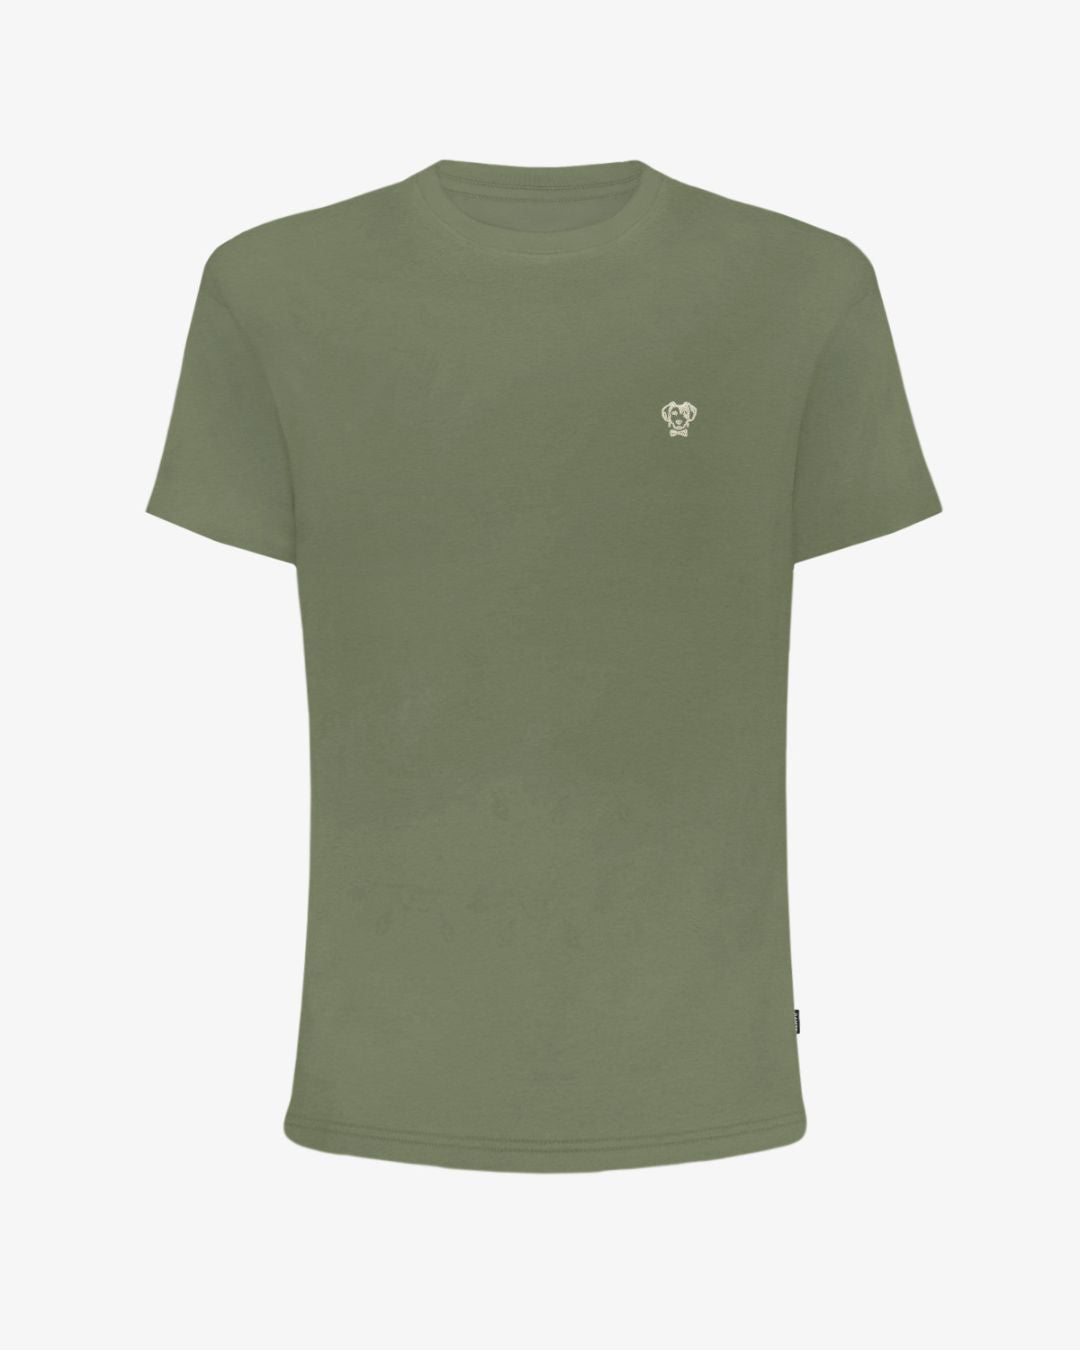 Camiseta Antimanchas de Mujer Verde Militar